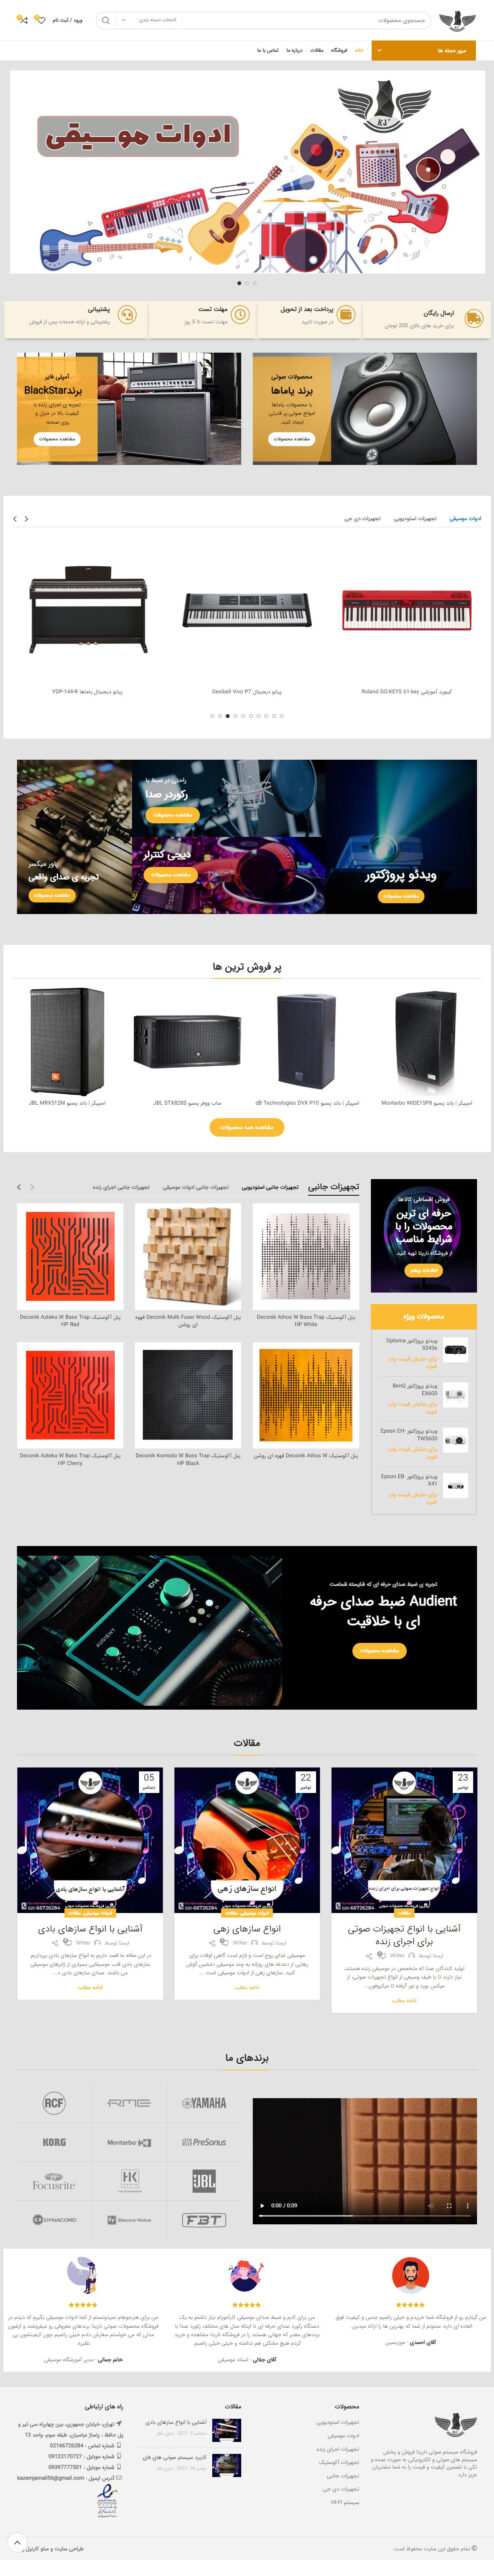 طراحی سایت فروشگاهی لوازم صوتی ناریتا